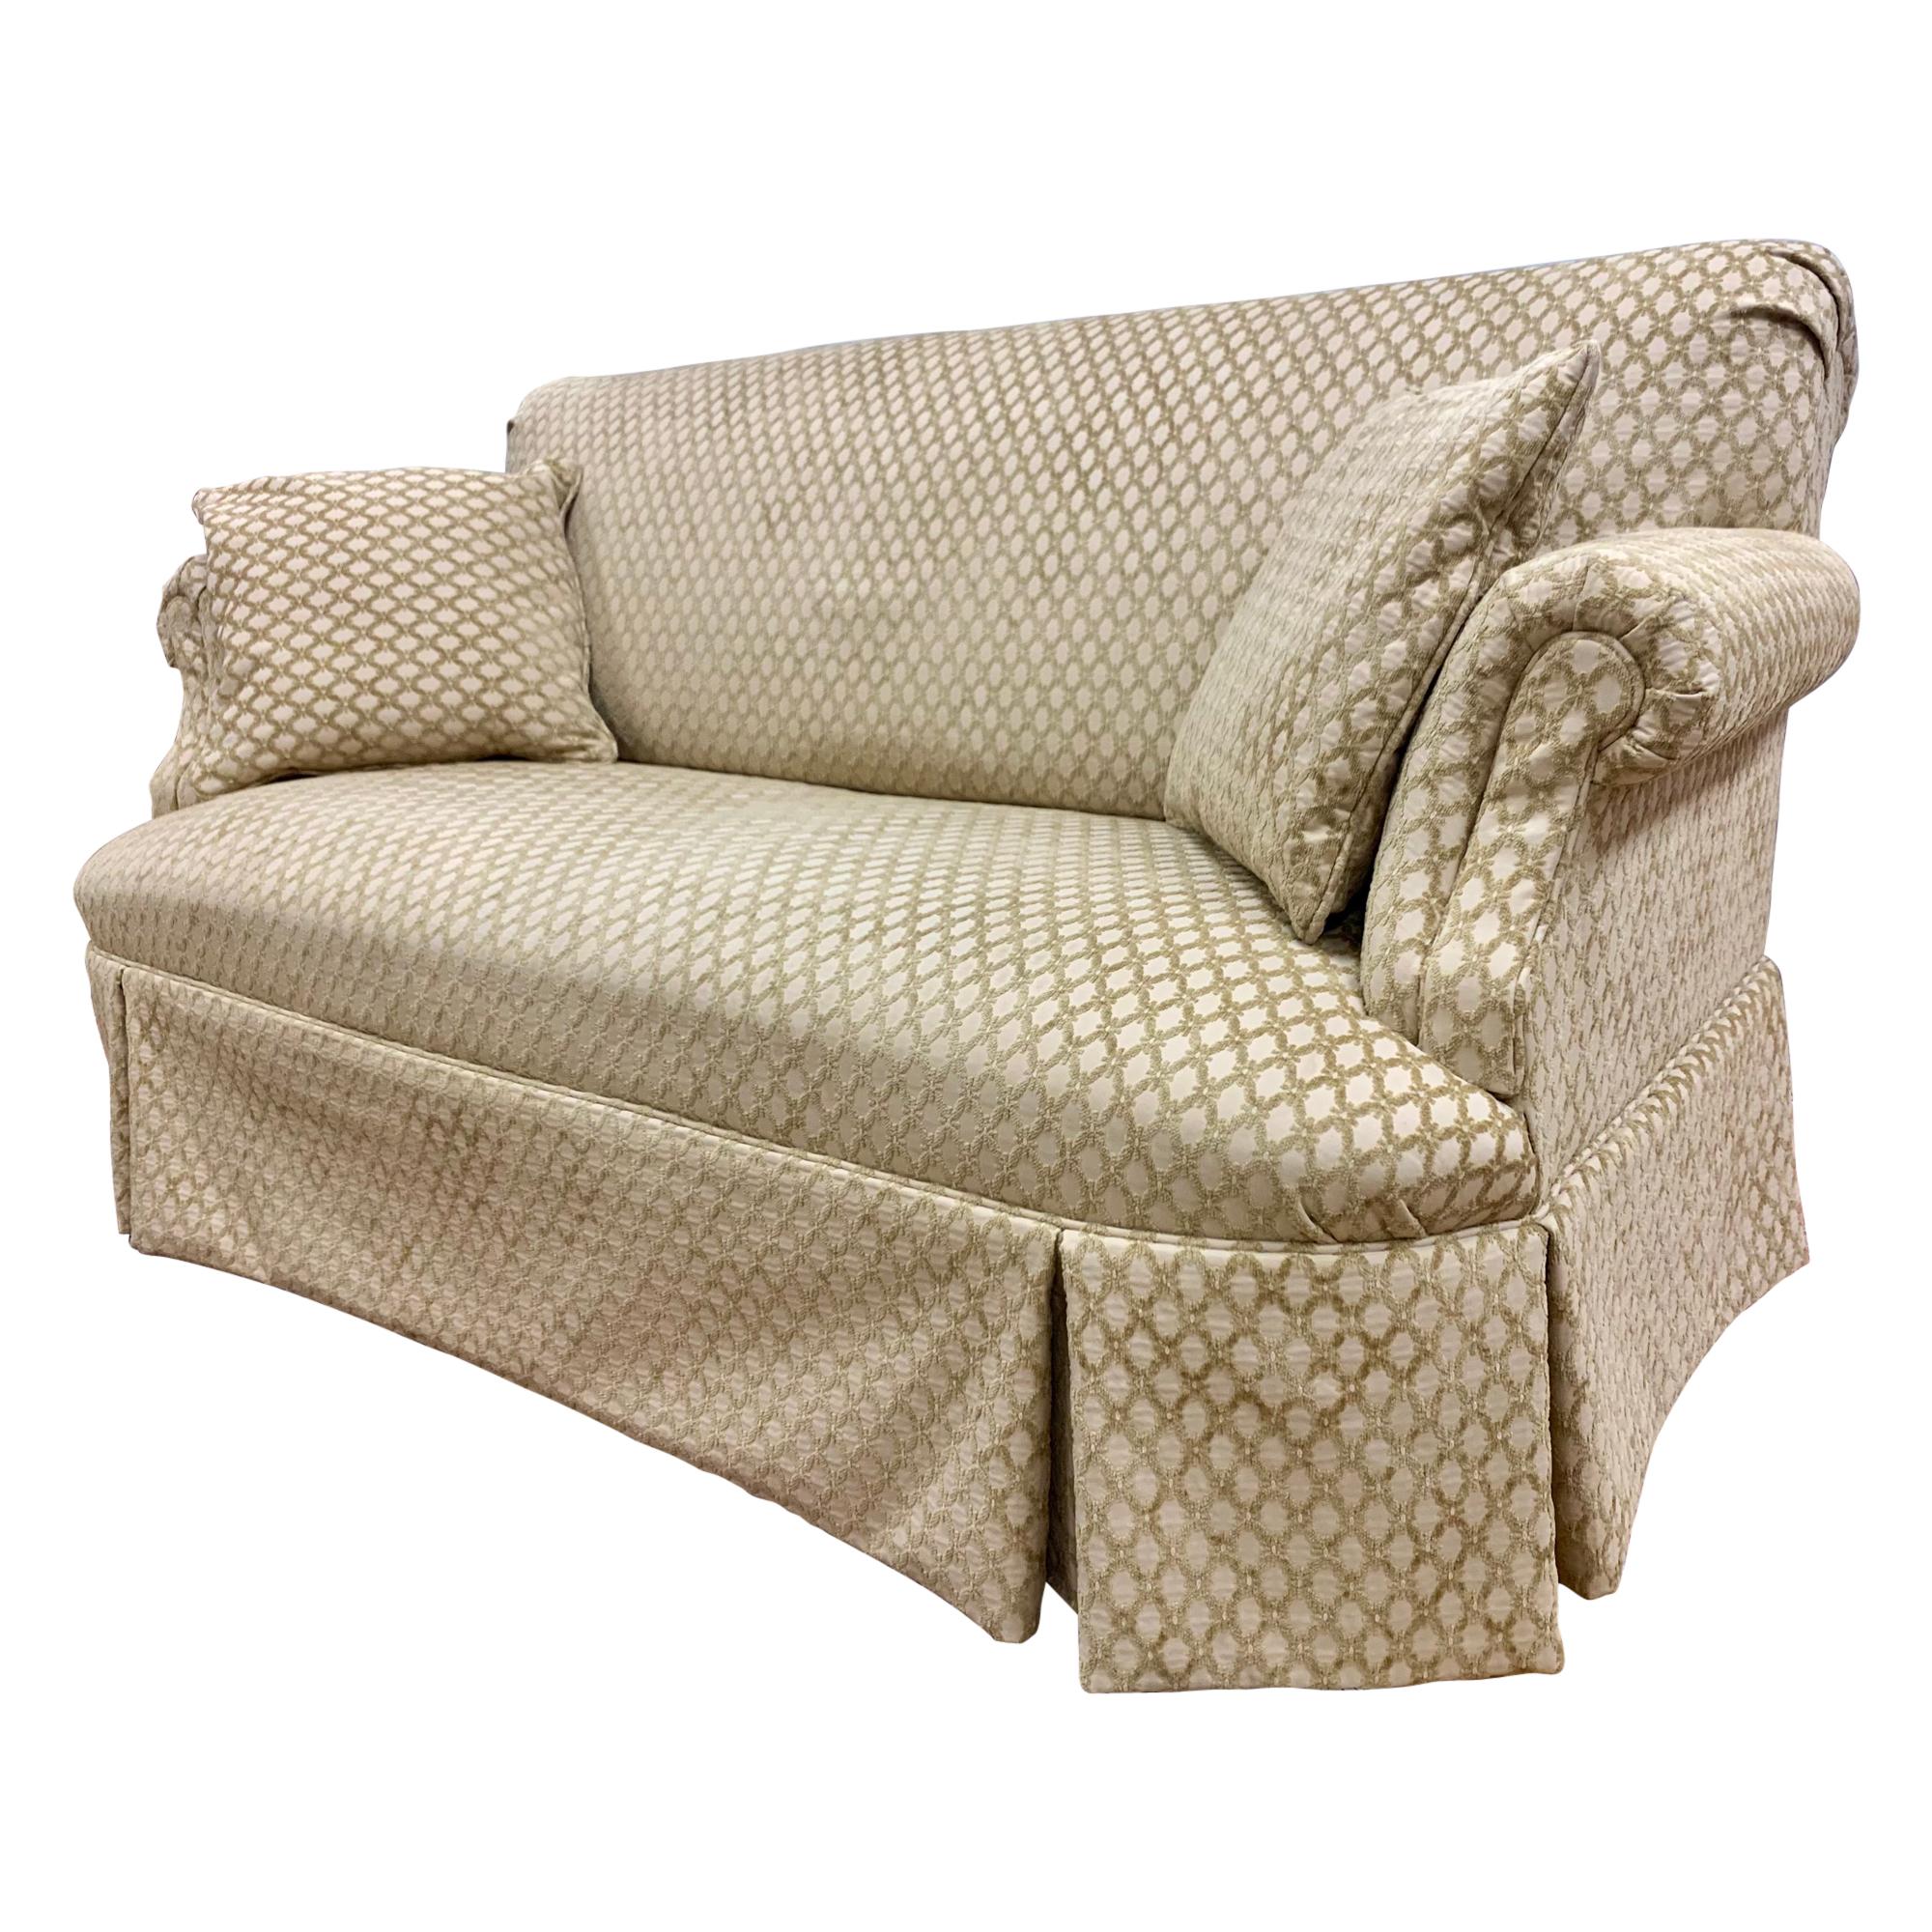 Custom Loveseat Sofa with Raised Trellis Kravet Fabric